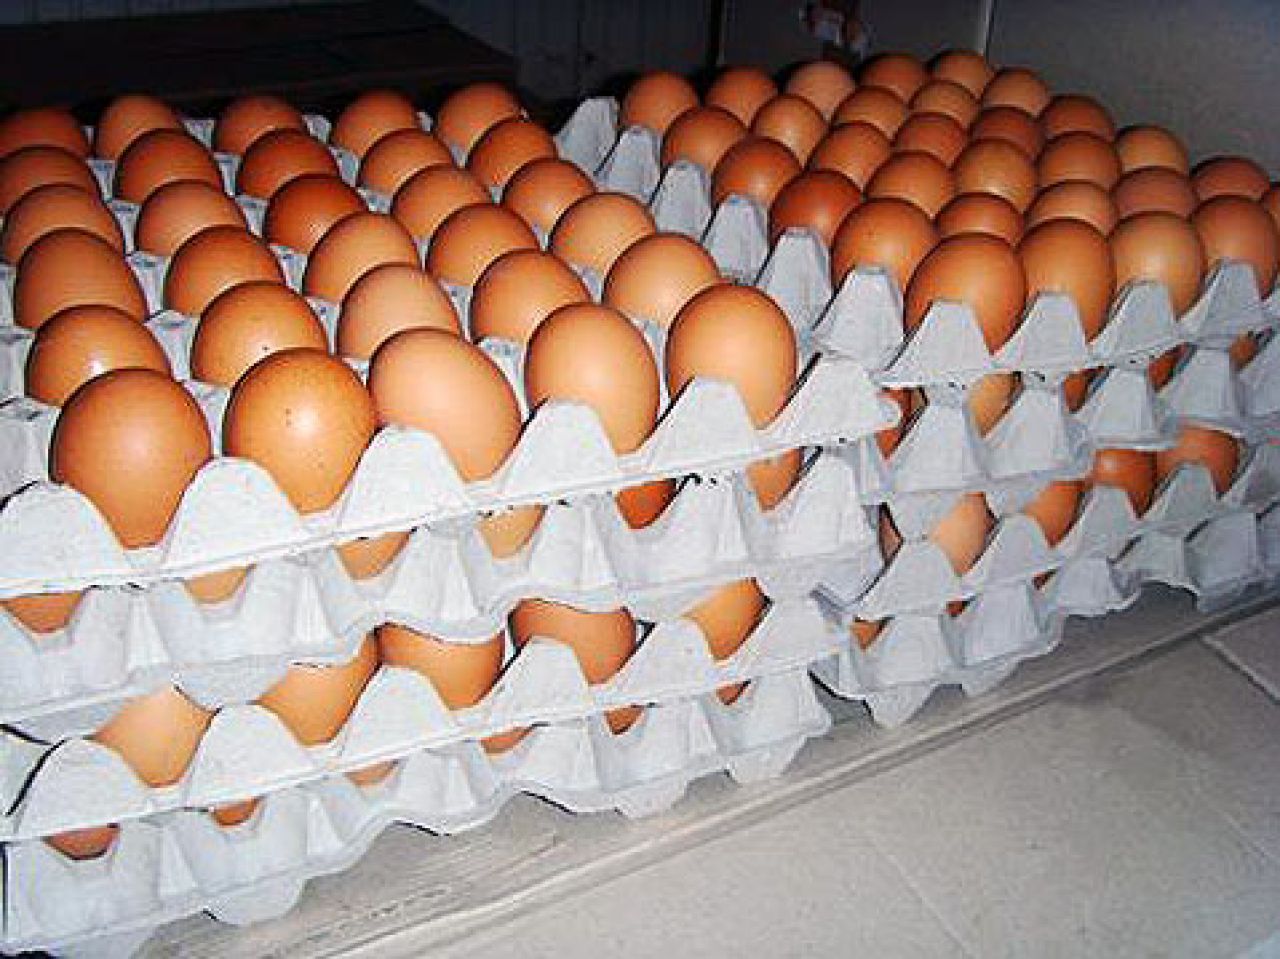 Slovenija povukla jaja iz Njemačke i Austrije zbog afere s fipronilom